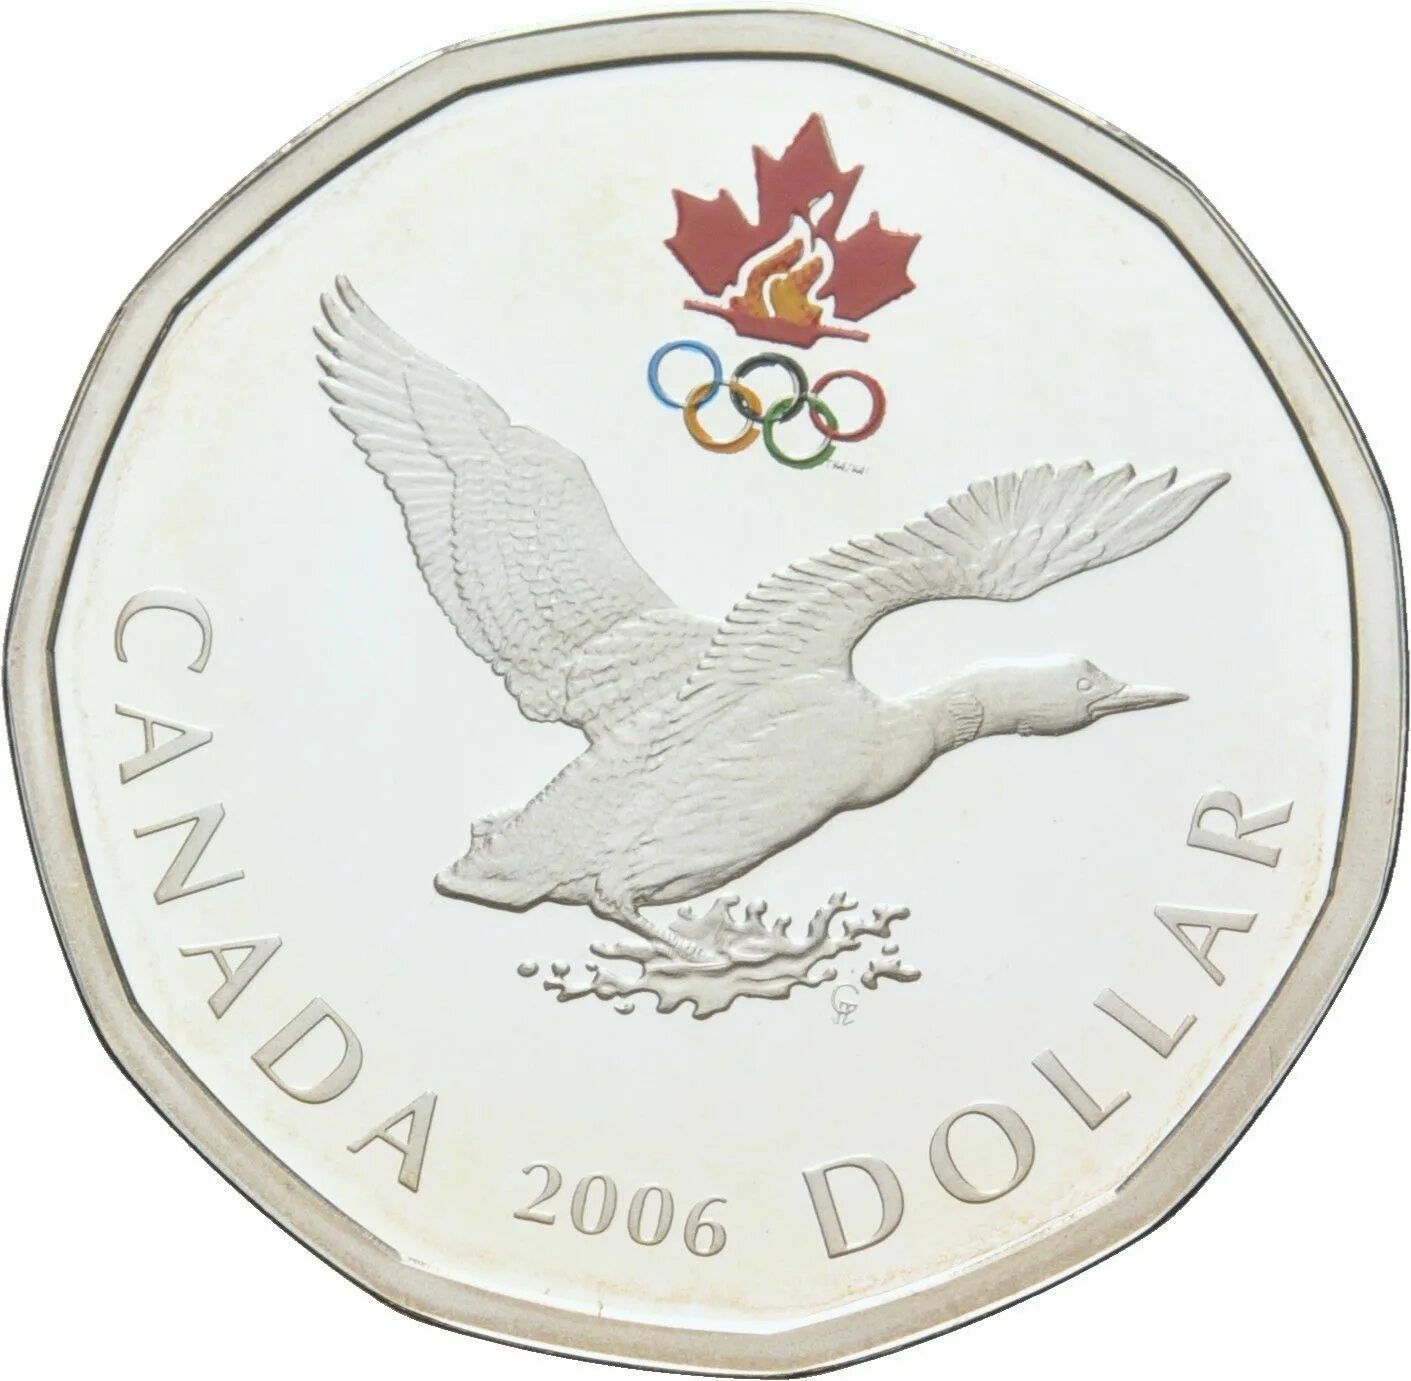 Канада 1 доллар 2006 серебро. 2 Доллар 2006 Канада. Канада 1 доллар 2007 года а727. Монета Канады 2 доллара 2006 года медведь в лучах. 1 доллар 2006